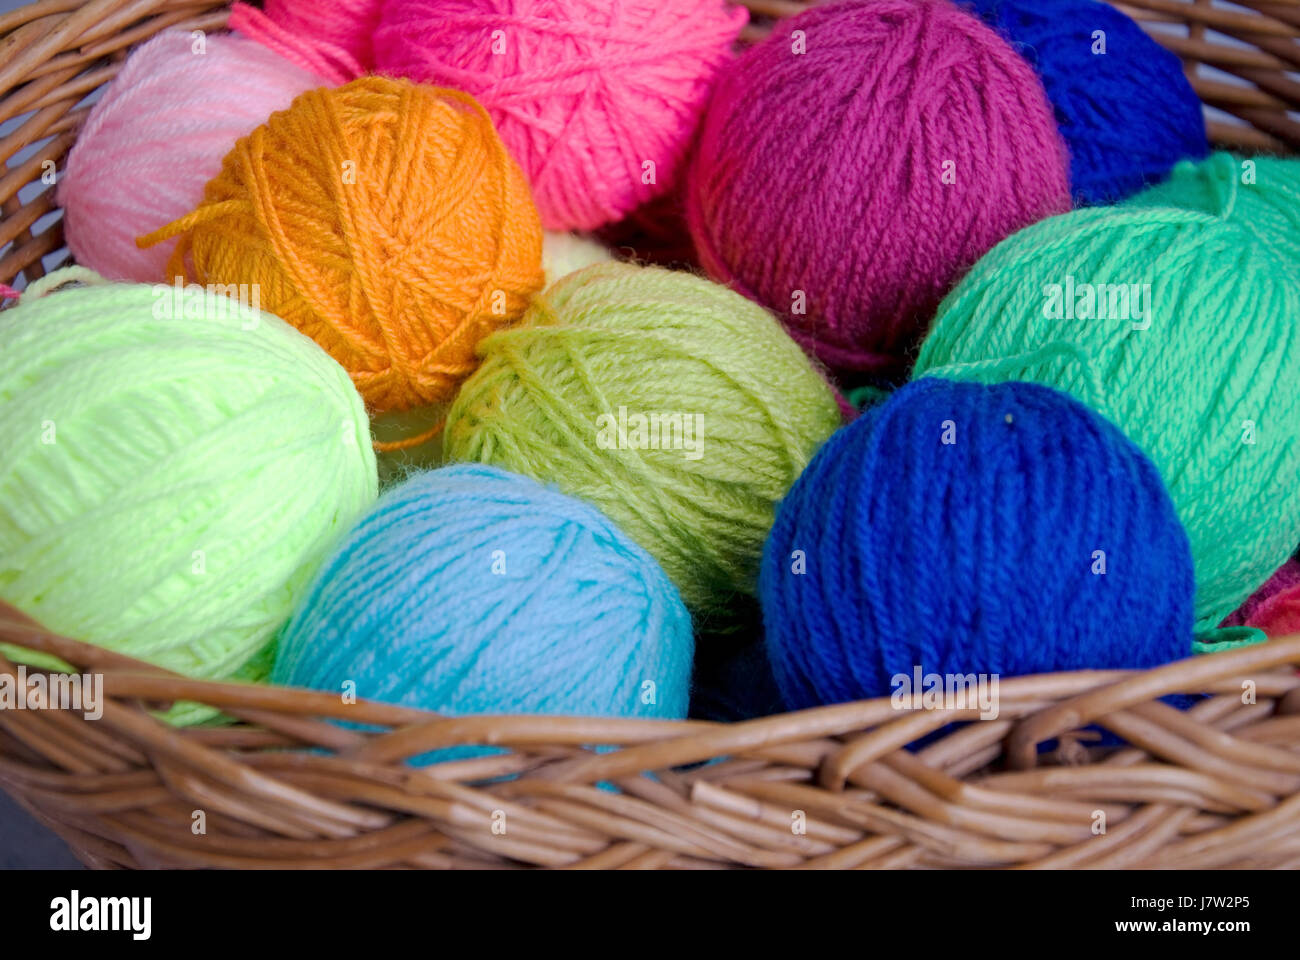 Hermoso colorido de colores múltiples ricamente coloreado cesta de lana tejida hobby Foto de stock